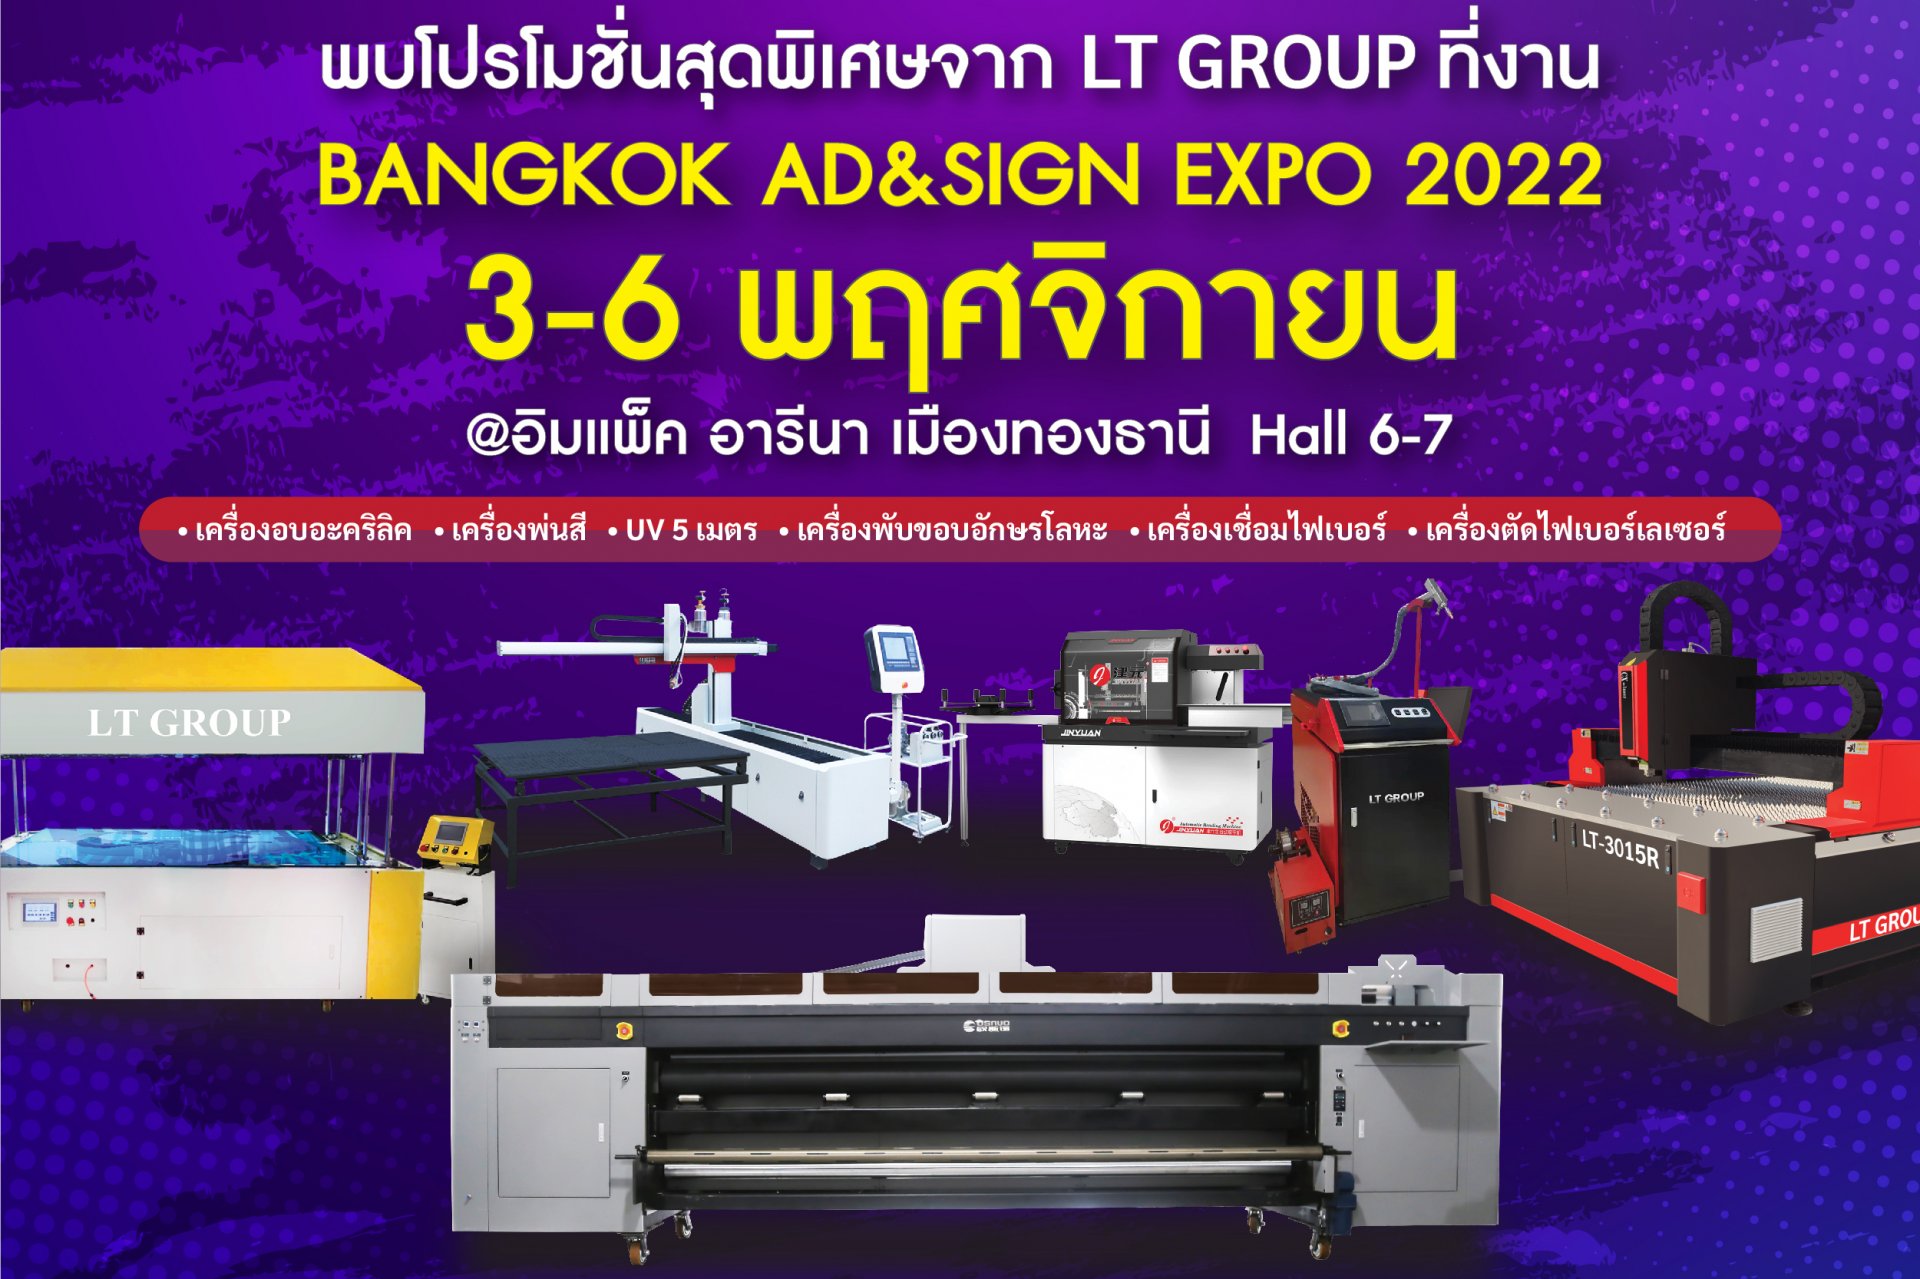 BANGKOK AD&SIGN EXPO 2022